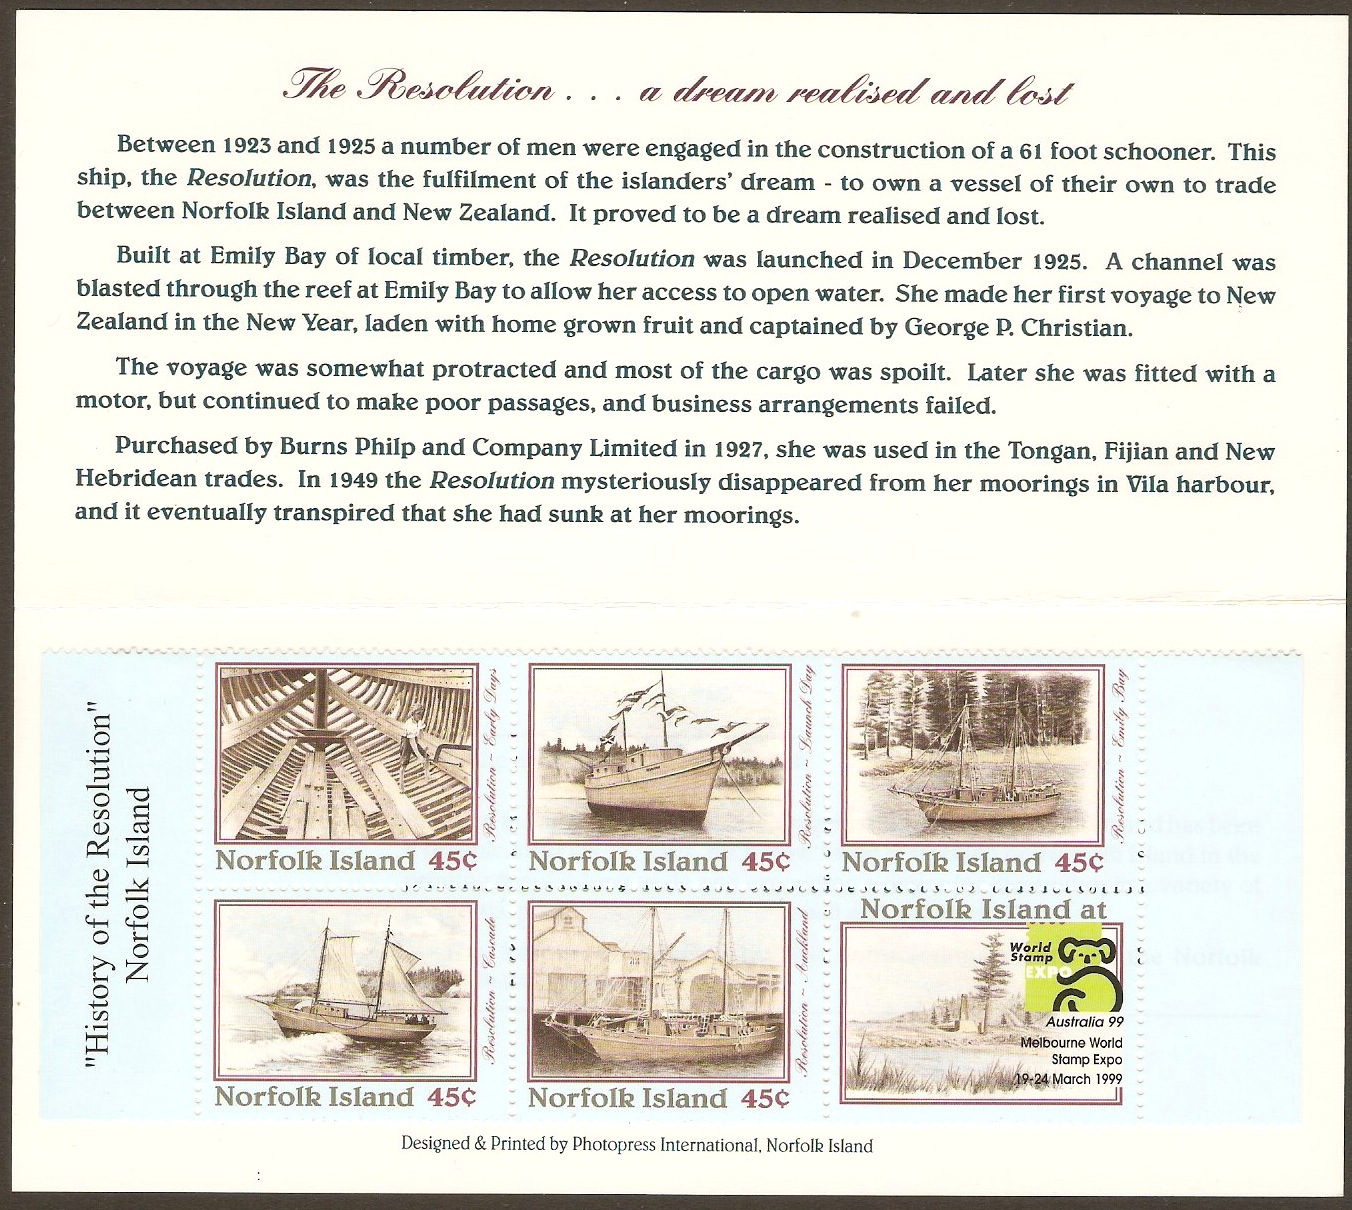 Norfolk Island 1999 "Australia '99" Exhibition Stamp Booklet. SG